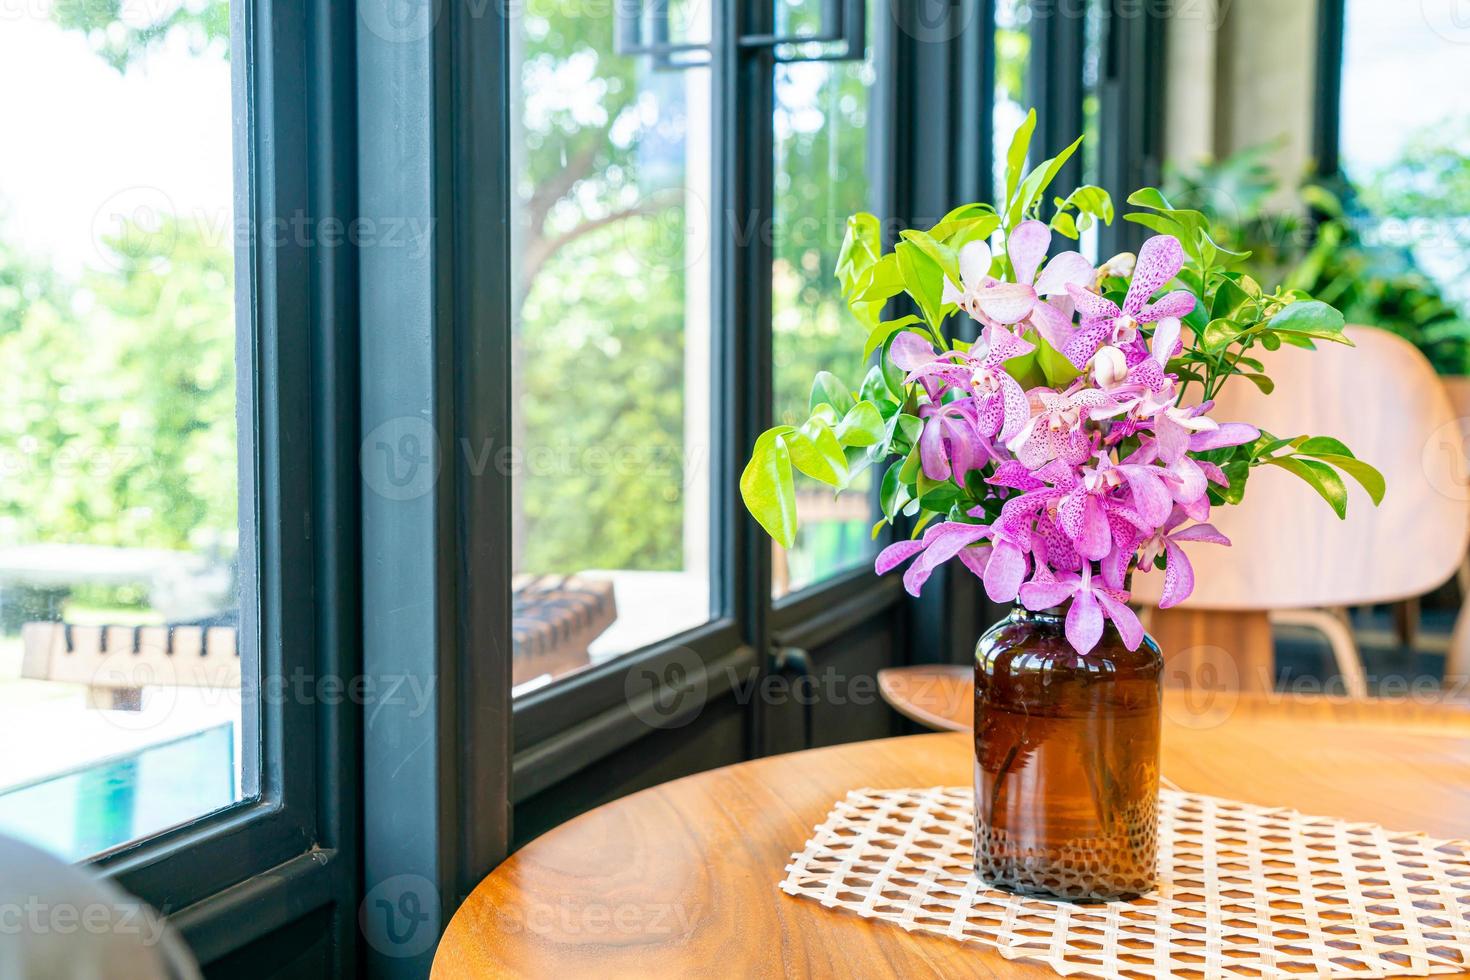 orchidee bloemen in vaas decoratie op tafel in coffeeshop café restaurant foto